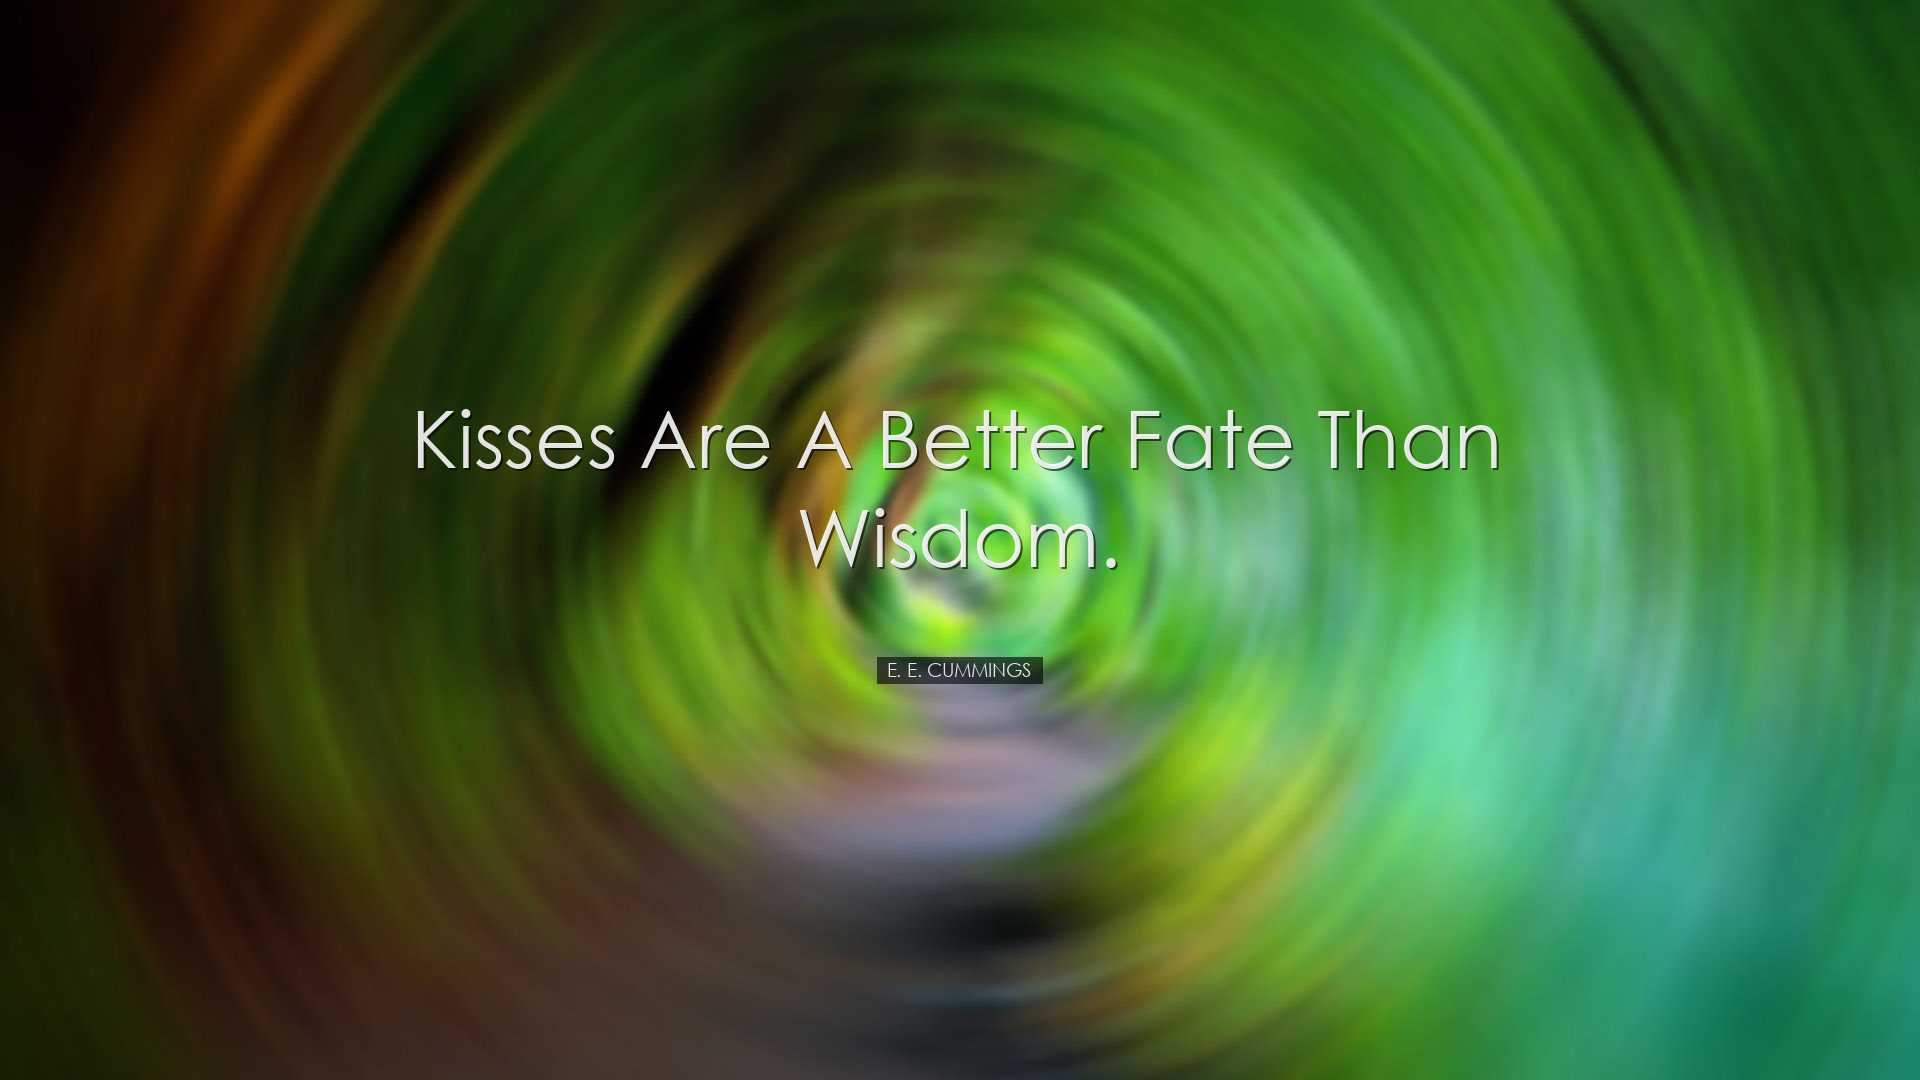 Kisses are a better fate than wisdom. - e. e. cummings